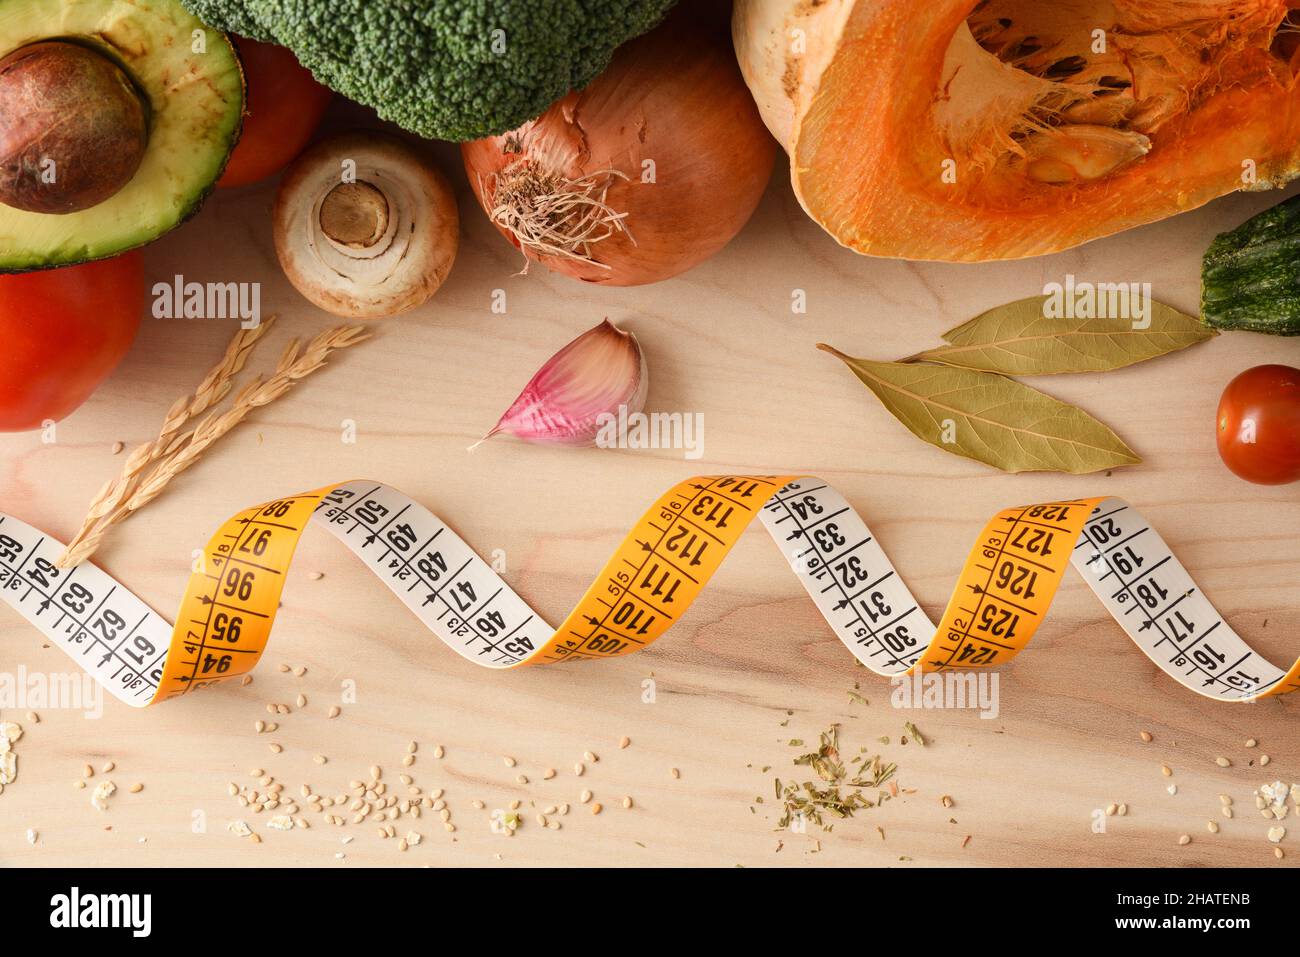 Gewichtskontrolle Konzept mit Maßband und Lebensmittel auf Holztisch voll mit gesunden Lebensmitteln. Draufsicht. Horizontale Zusammensetzung. Stockfoto